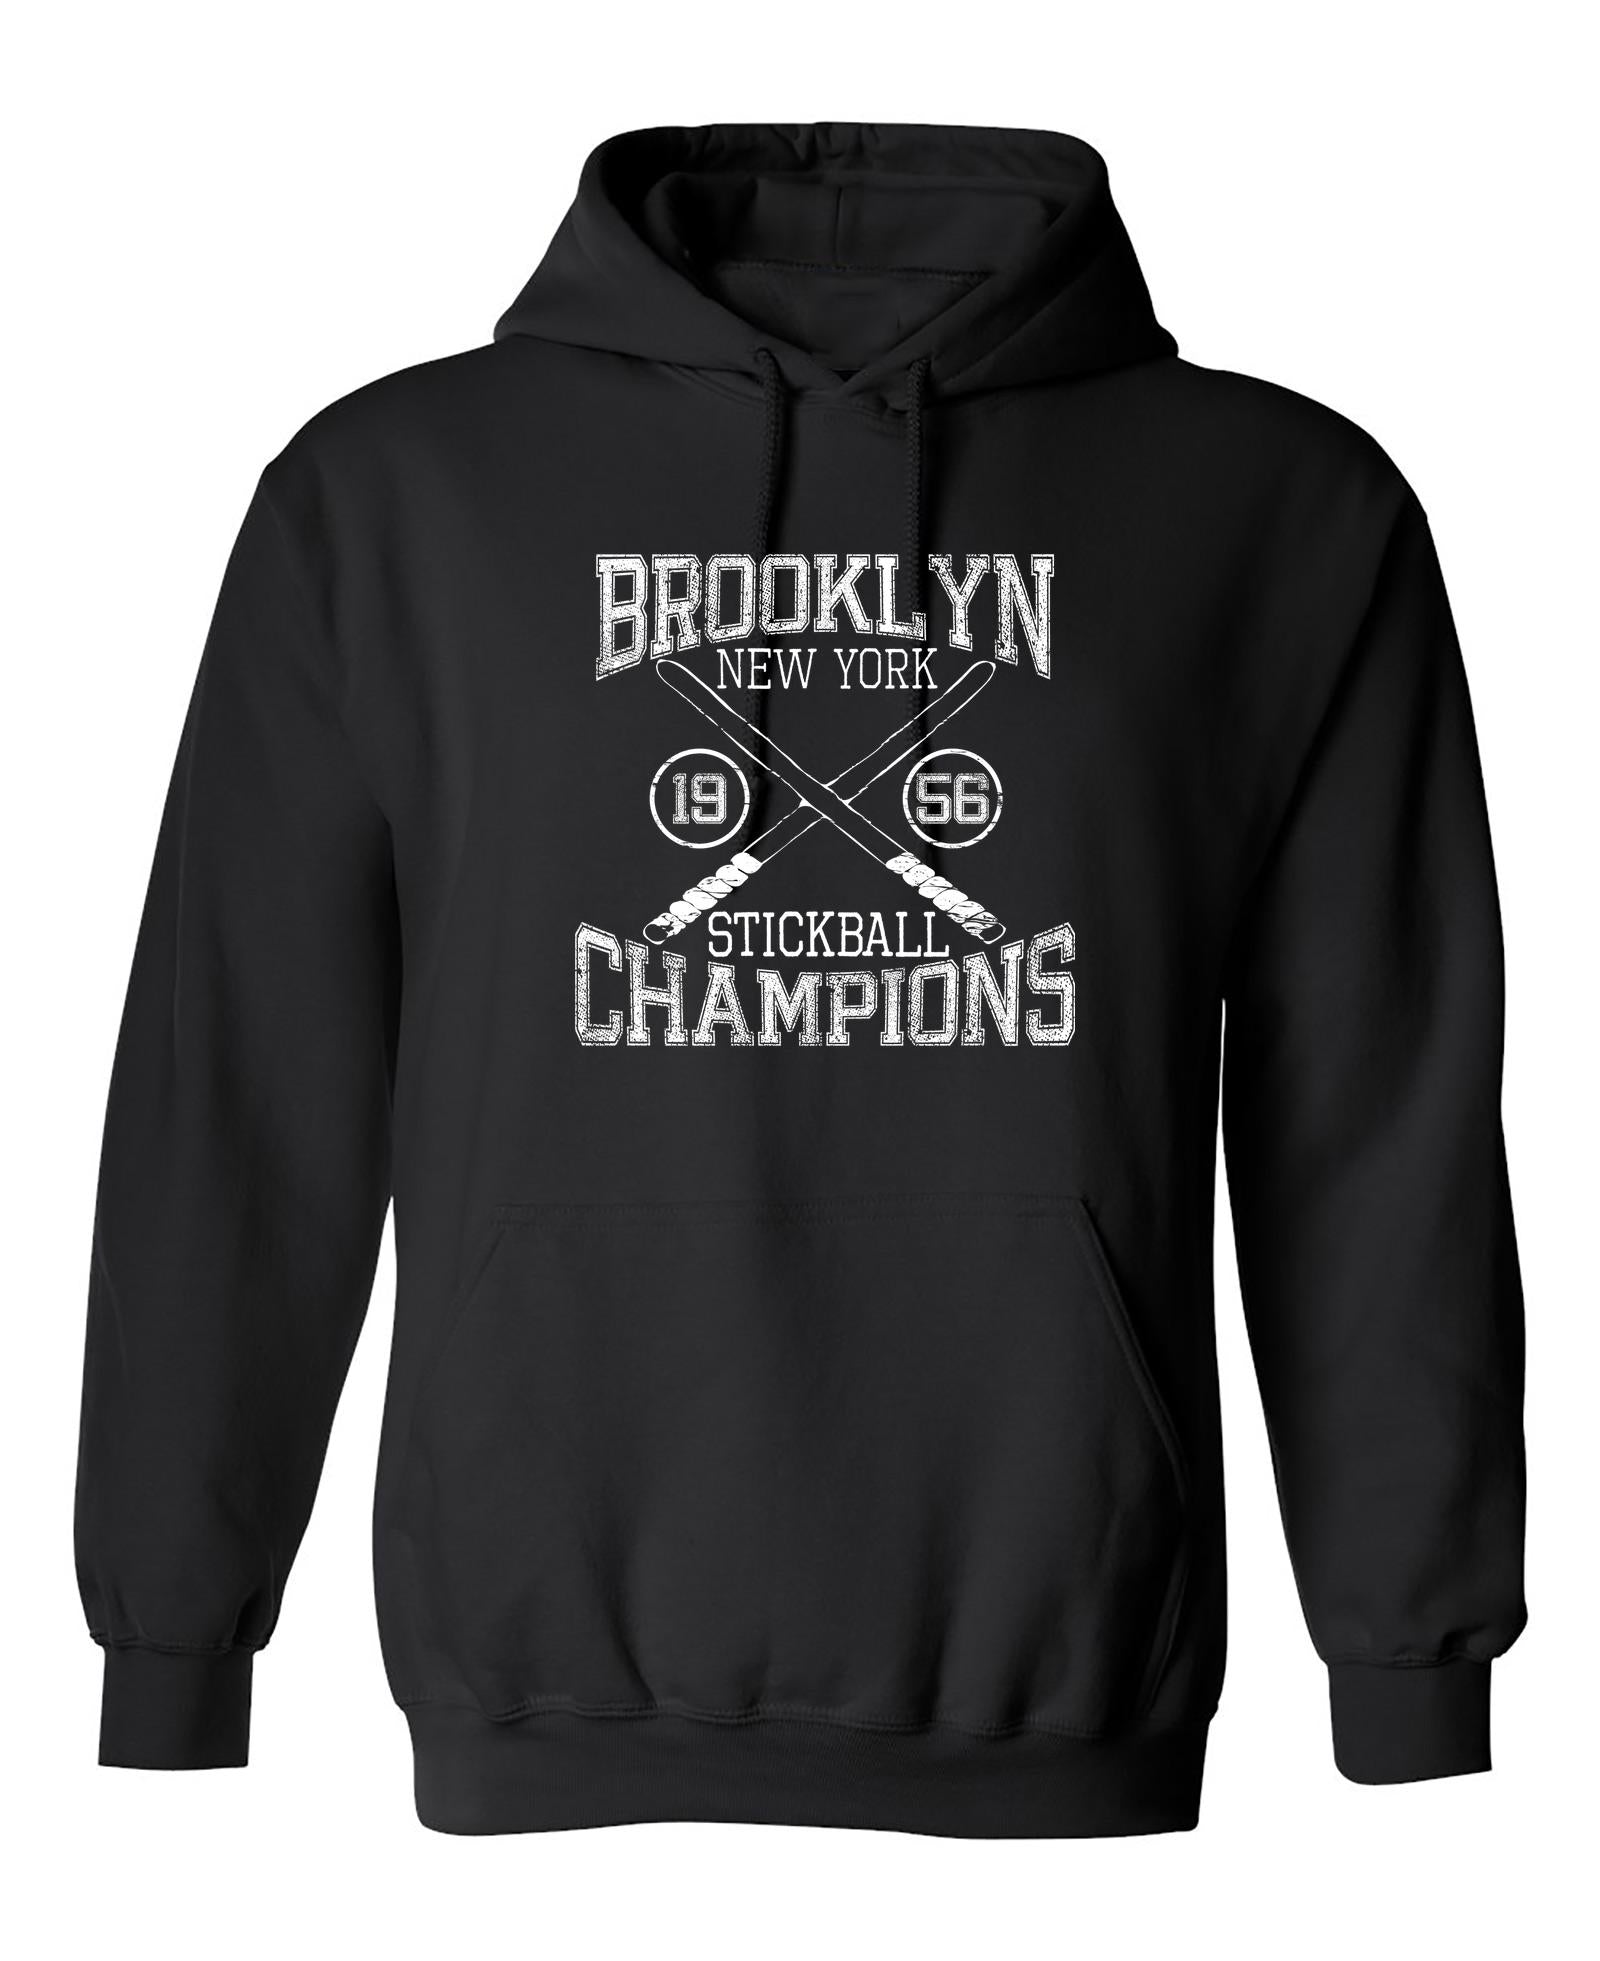 Funny T-Shirts design "Brooklyn Stickball Champions"